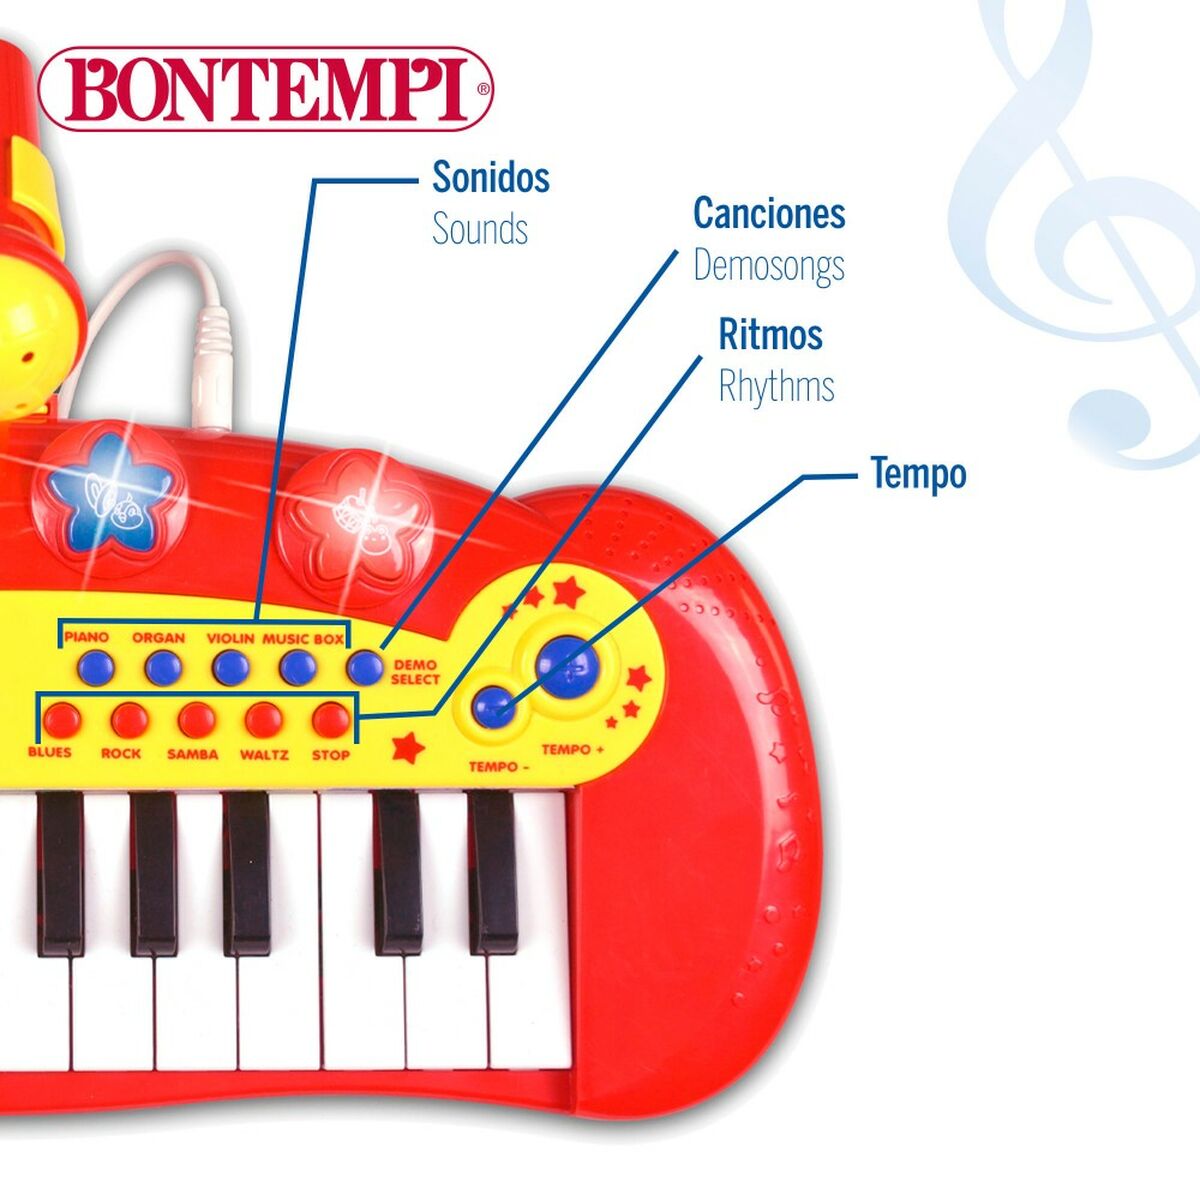 Interaktivt piano för bebisar Bontempi Barn Mikrofon 33 x 13 x 19,5 cm (6 antal)-Leksaker och spel, Barns Musikinstrument-Bontempi-peaceofhome.se